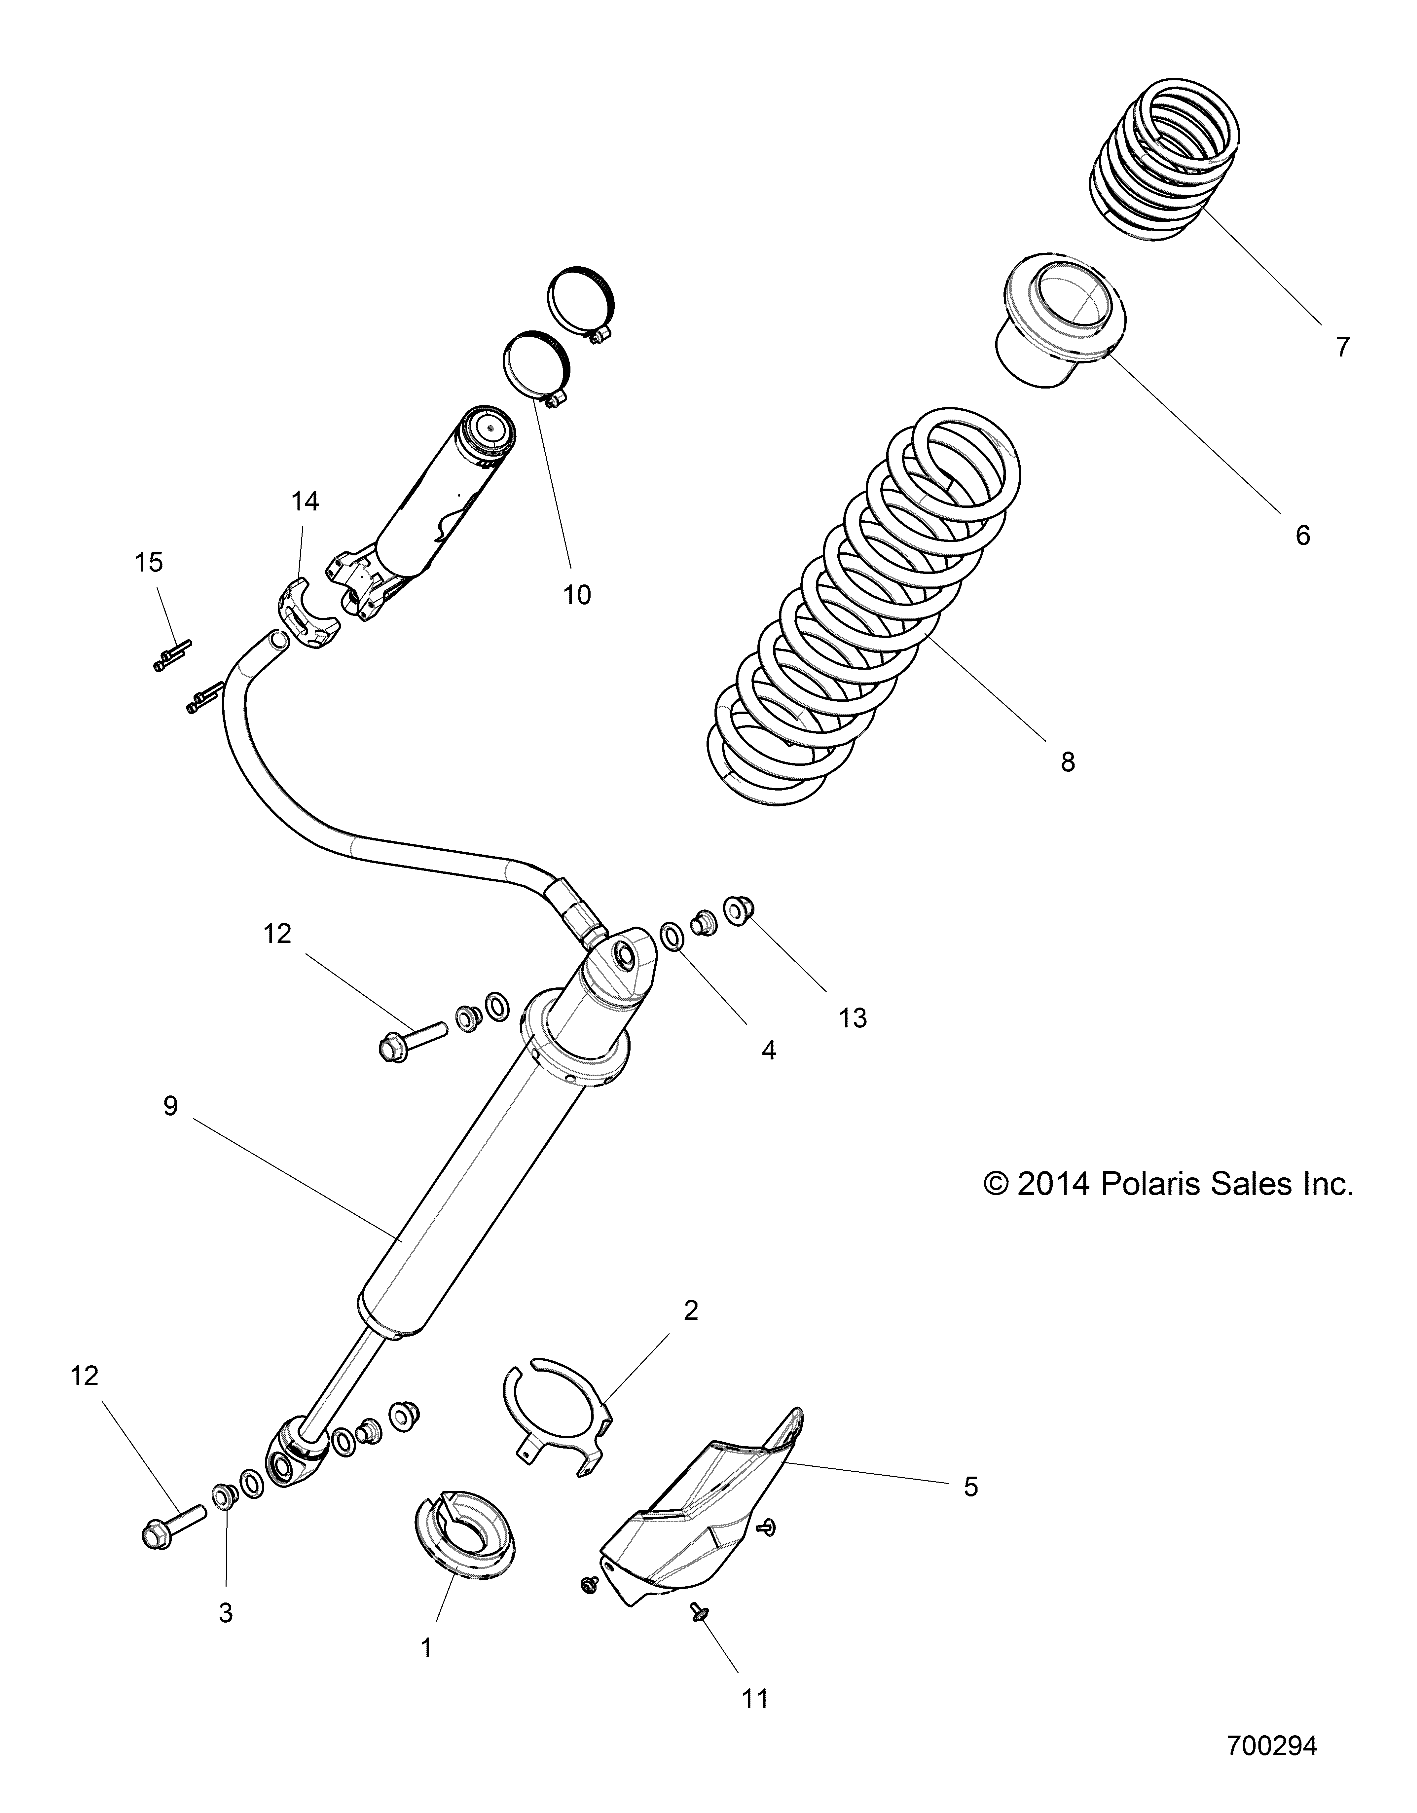 Foto diagrama Polaris que contem a peça 7044113-385